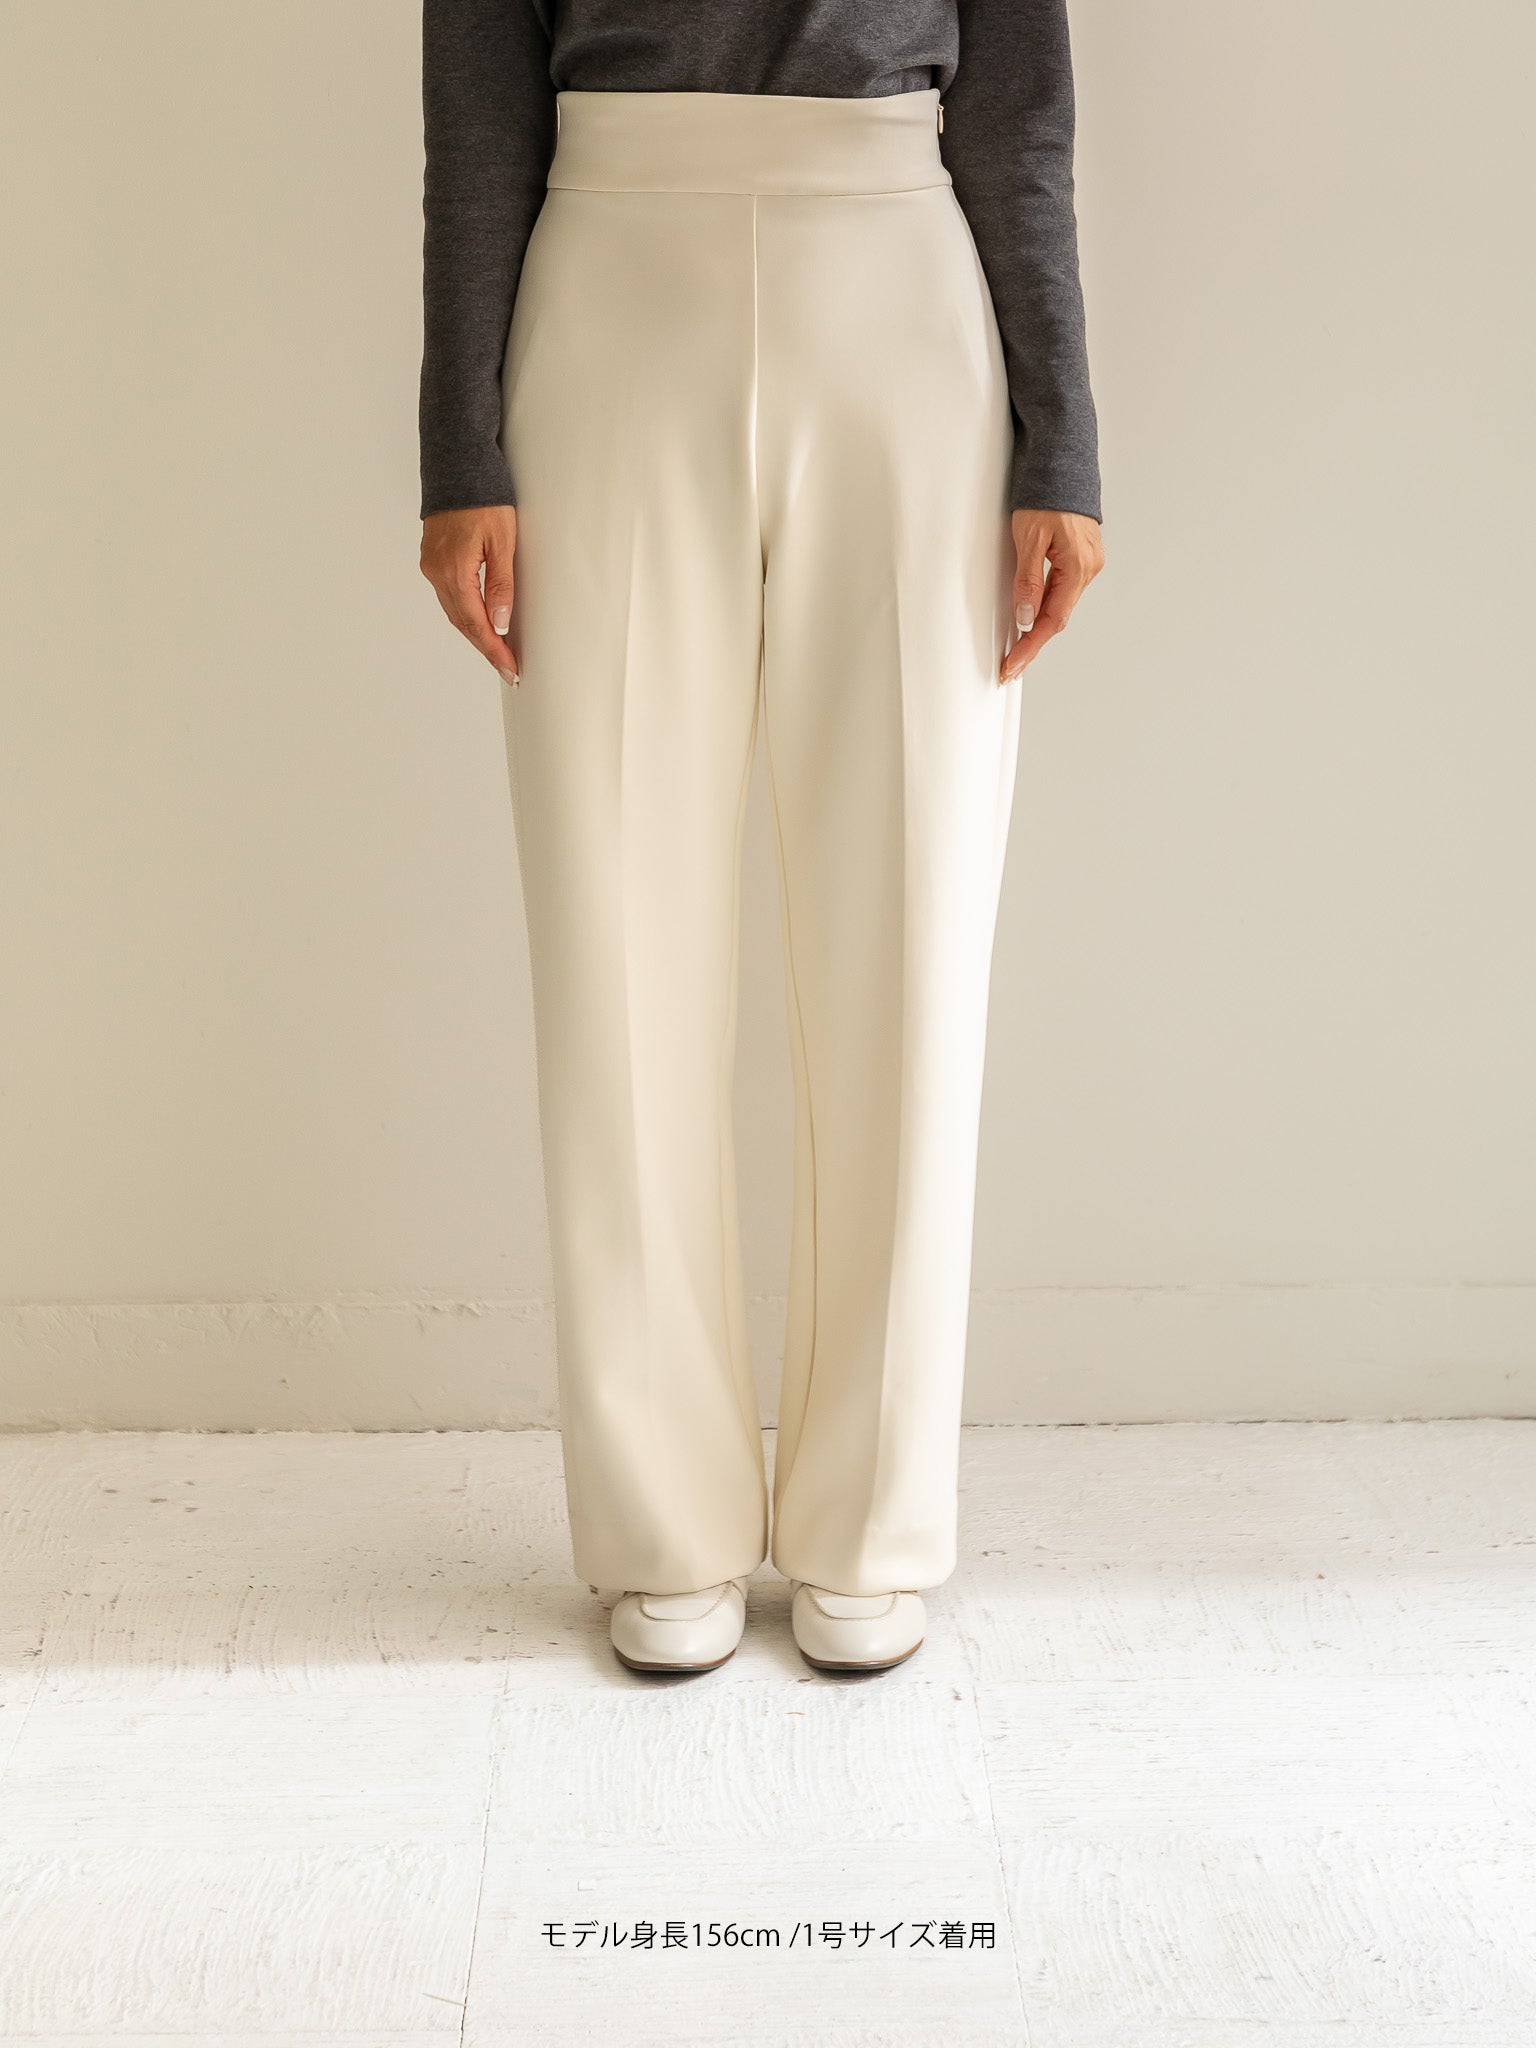 【予約販売】BIRAKU Pants -Off white